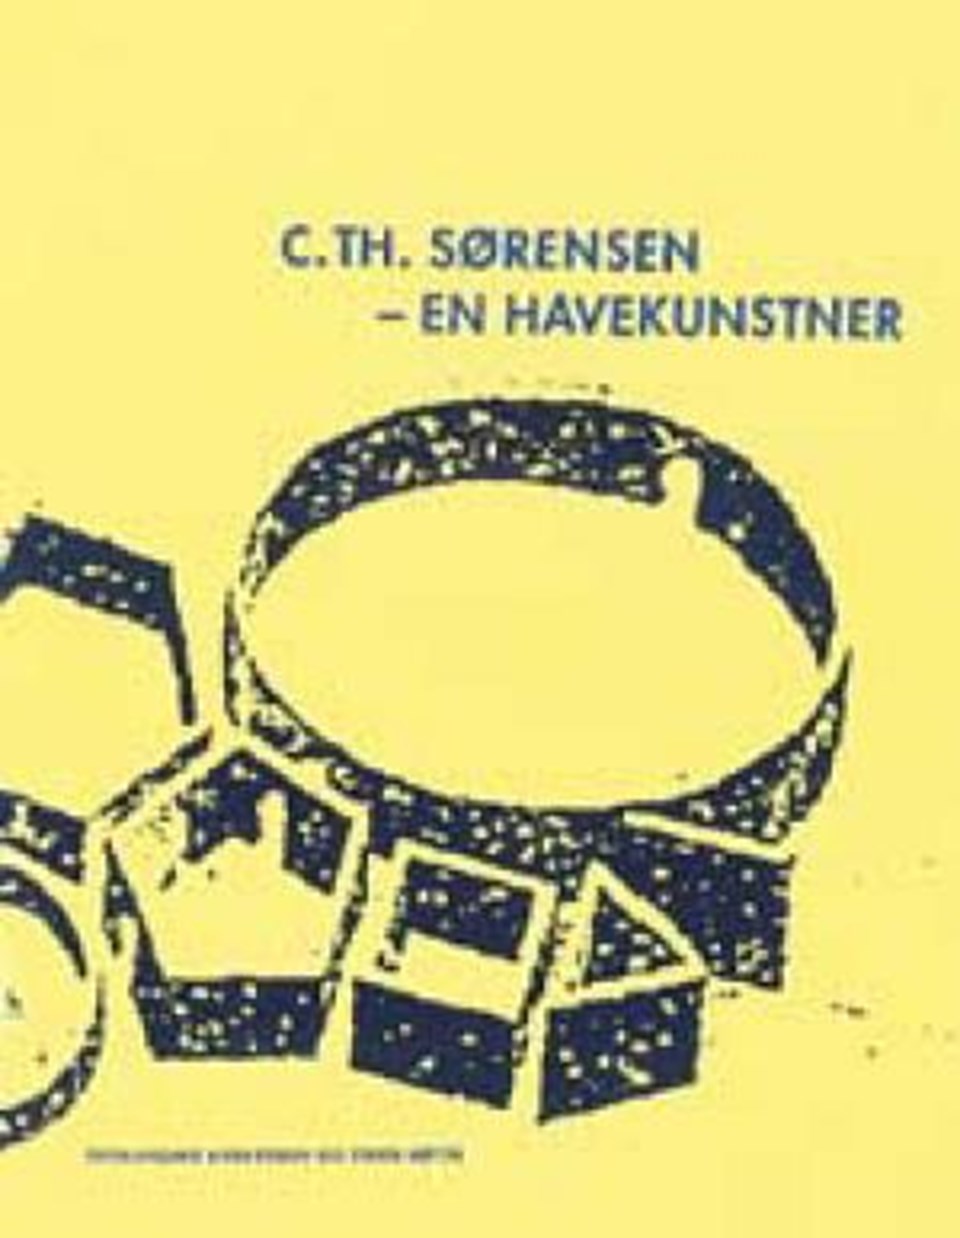 C. Th. Sørensen - en havekunstner